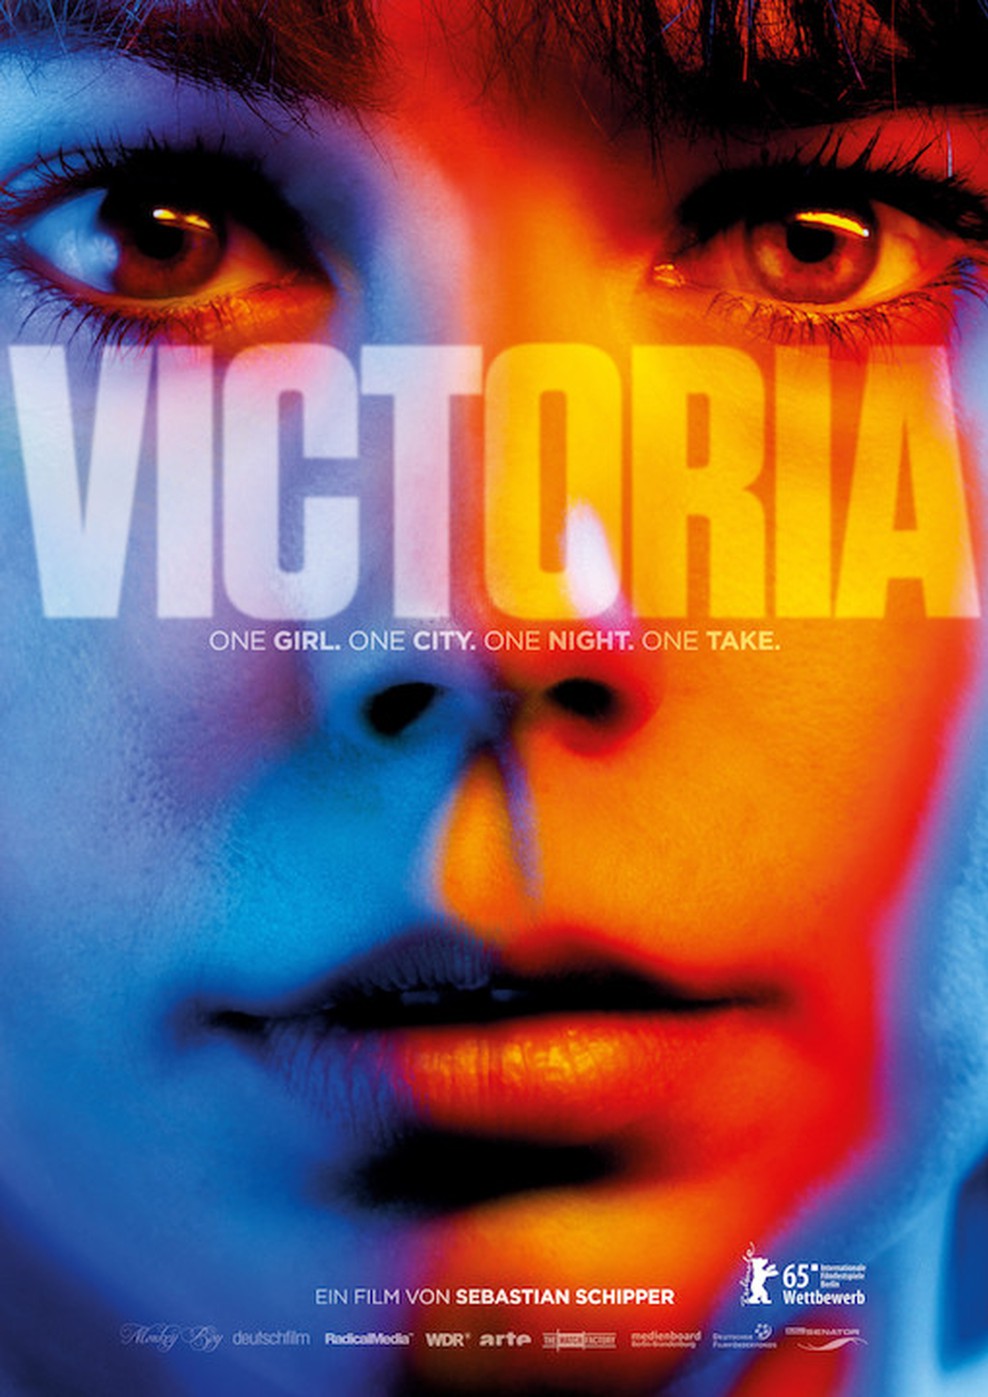 Victoria (Poster)